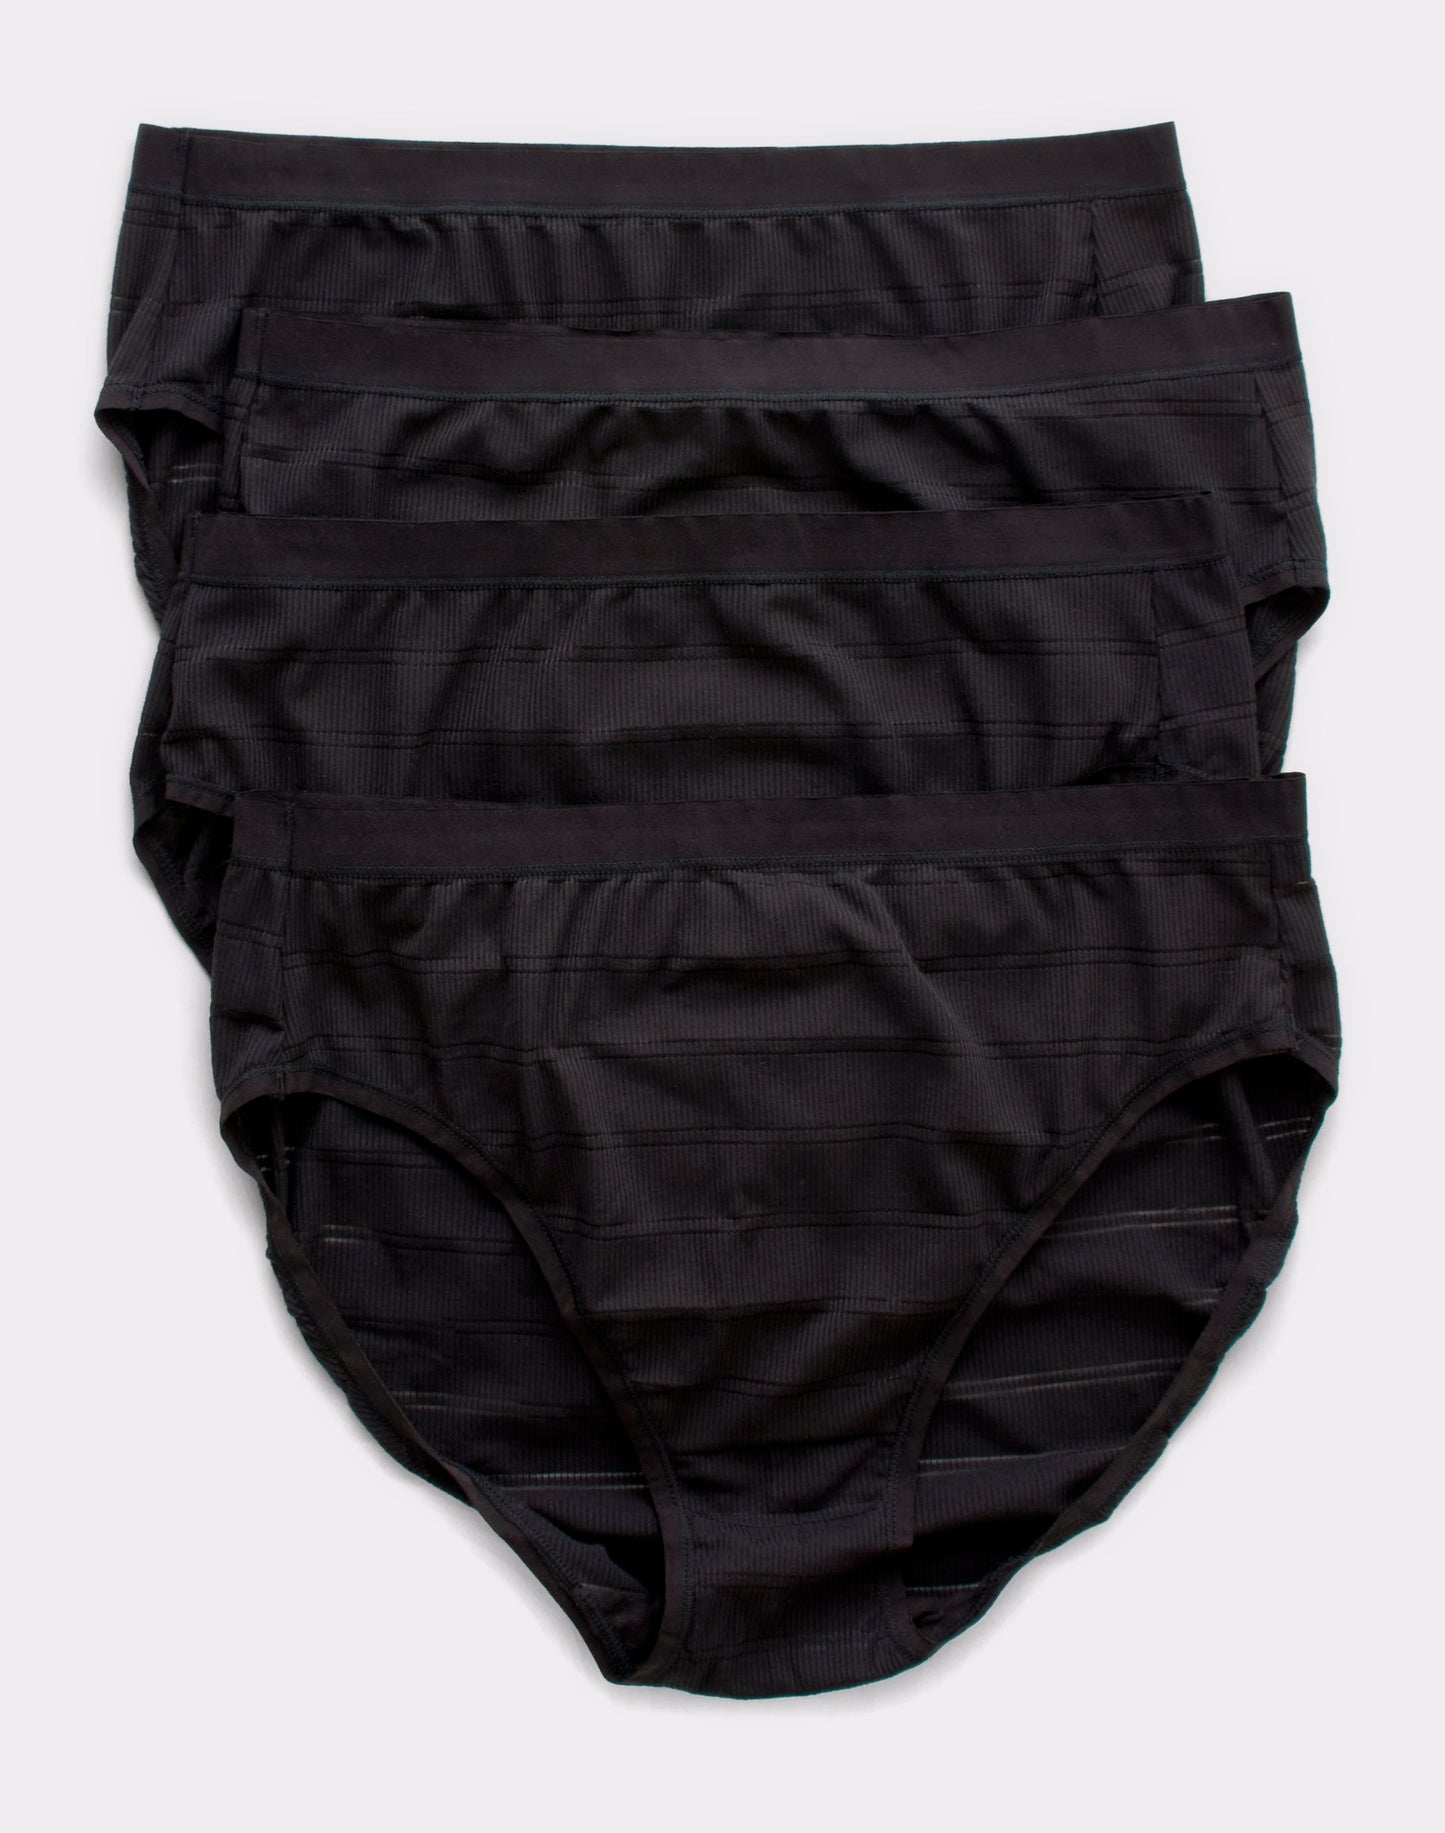 Hanes Ultimate Women's Comfort Flex Fit Hi-Cut 4-Pack Black/Black/Black/Black 5